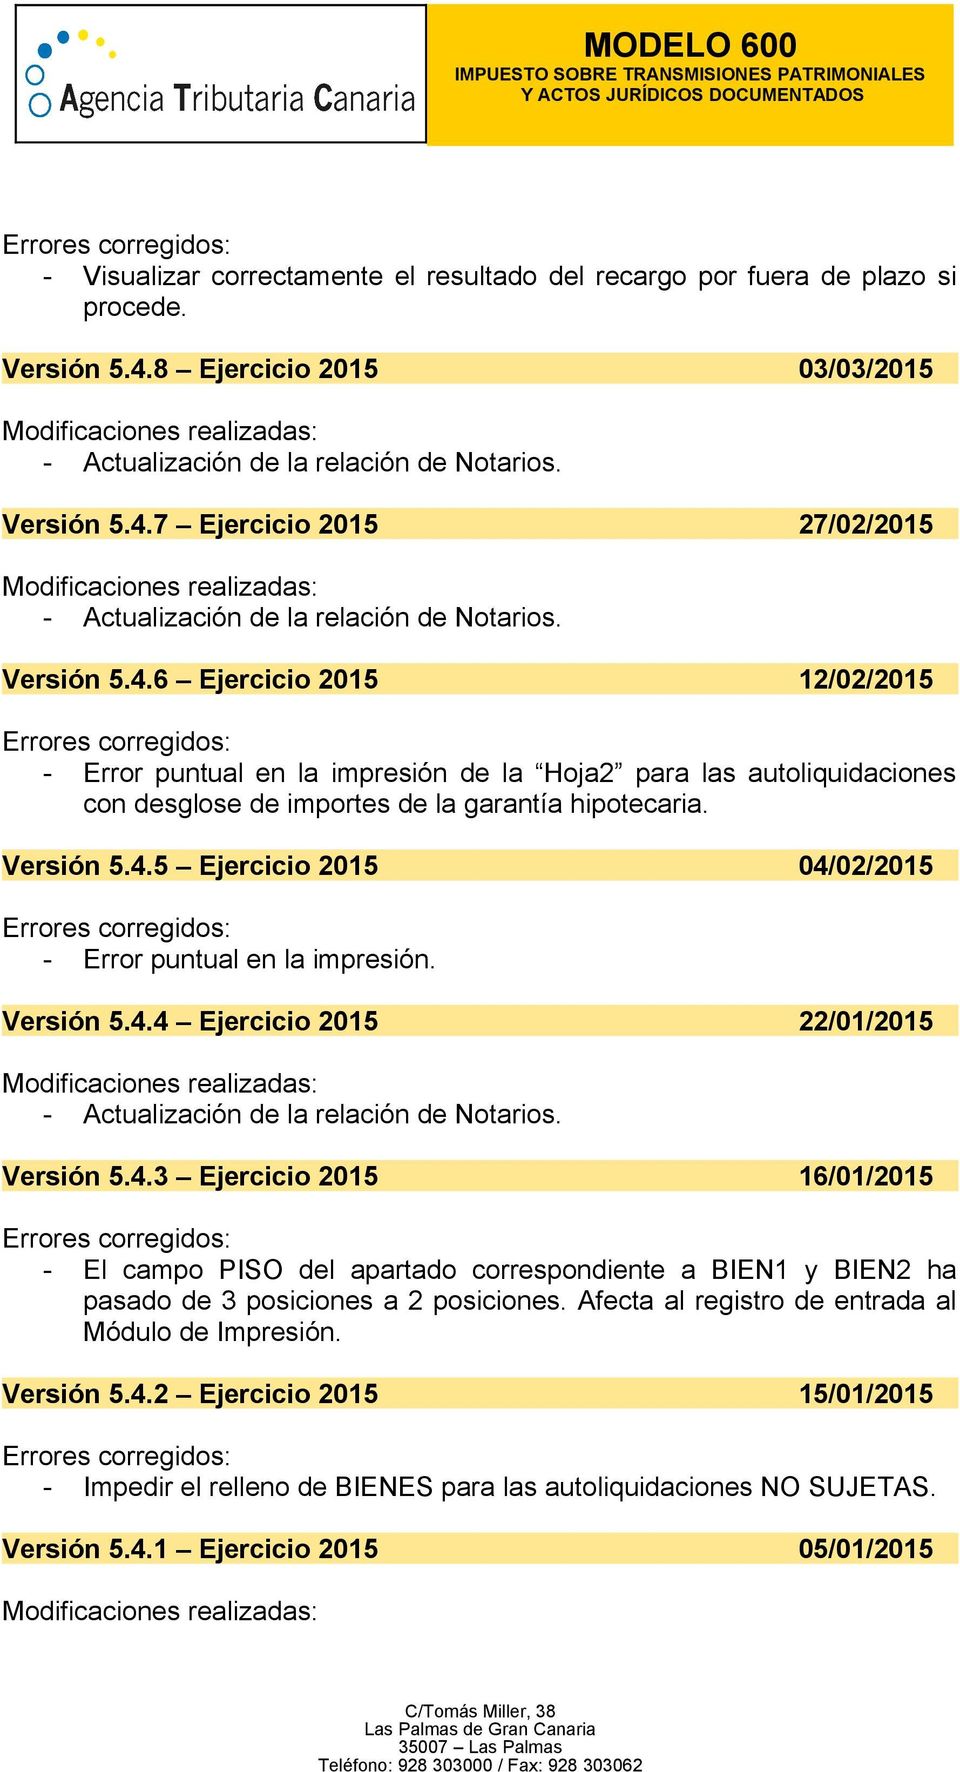 Versión 5.4.5 Ejercicio 2015 04/02/2015 - Error puntual en la impresión. Versión 5.4.4 Ejercicio 2015 22/01/2015 Versión 5.4.3 Ejercicio 2015 16/01/2015 - El campo PISO del apartado correspondiente a BIEN1 y BIEN2 ha pasado de 3 posiciones a 2 posiciones.